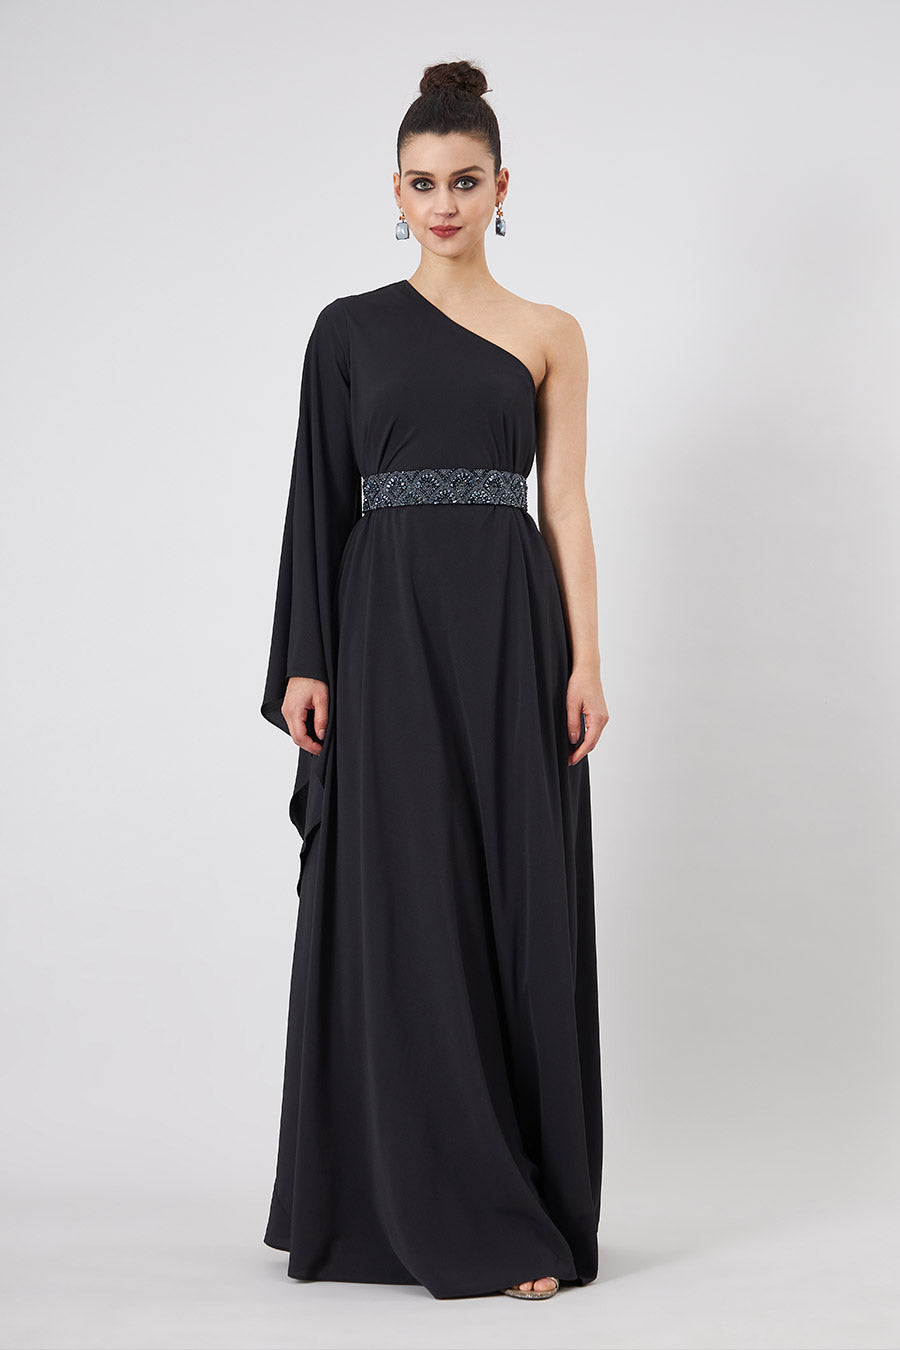 Black One-Shoulder Dress With Emebllished Belt